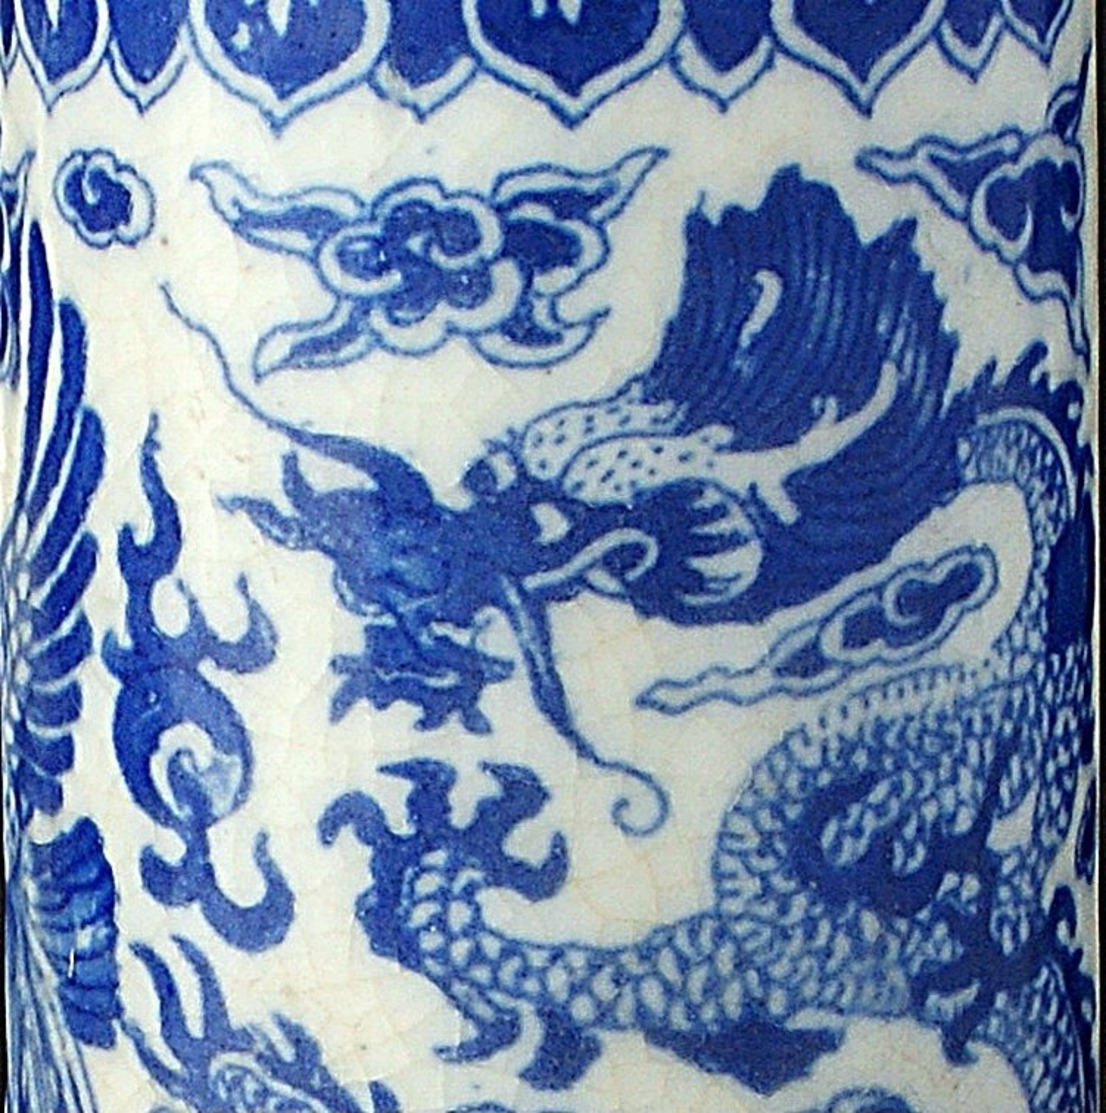 Chinese Blue & White Pottery Hat Stand, Chinese Yongzheng Porcelain, Phoenix & Dragon Pattern Chinese Art Pottery.